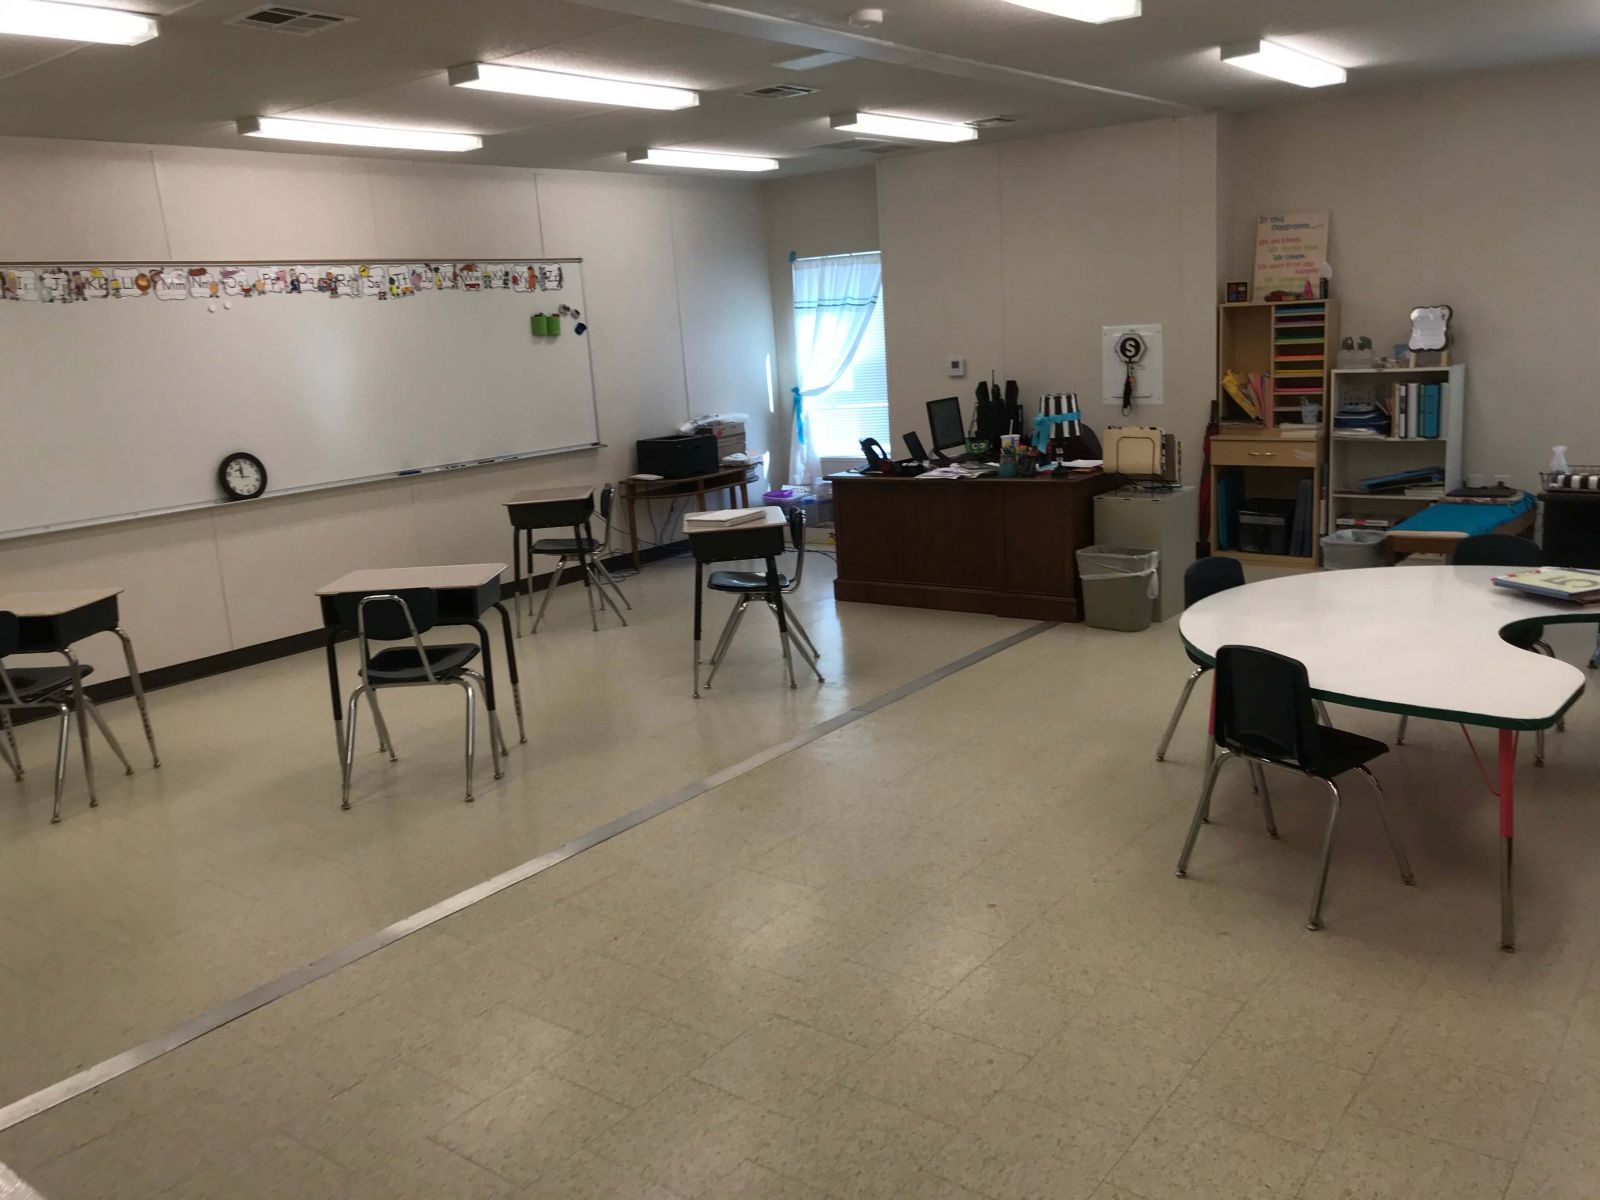 temporary-mobile-classroom-interior-6